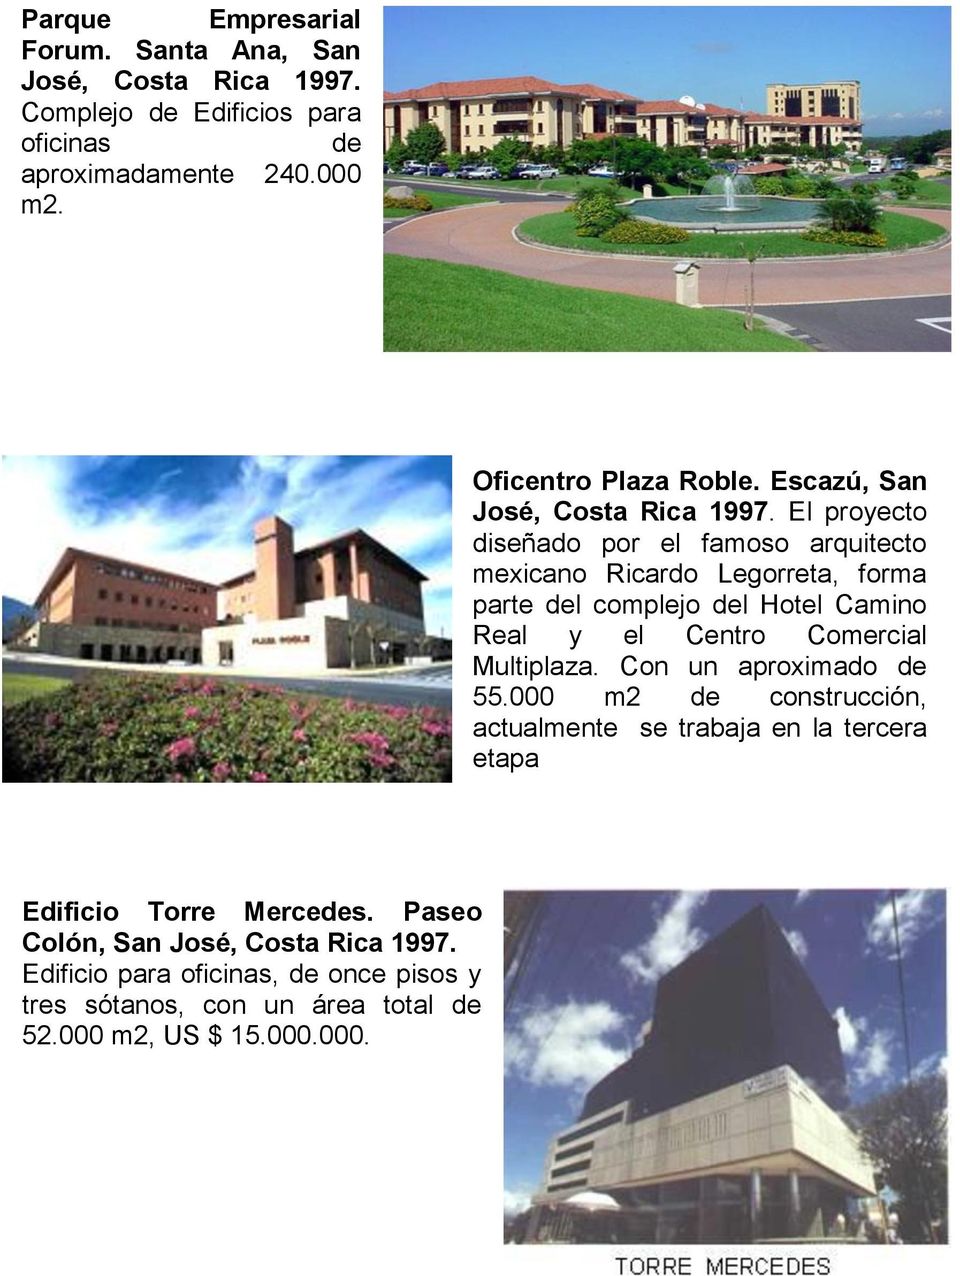 El proyecto diseñado por el famoso arquitecto mexicano Ricardo Legorreta, forma parte del complejo del Hotel Camino Real y el Centro Comercial